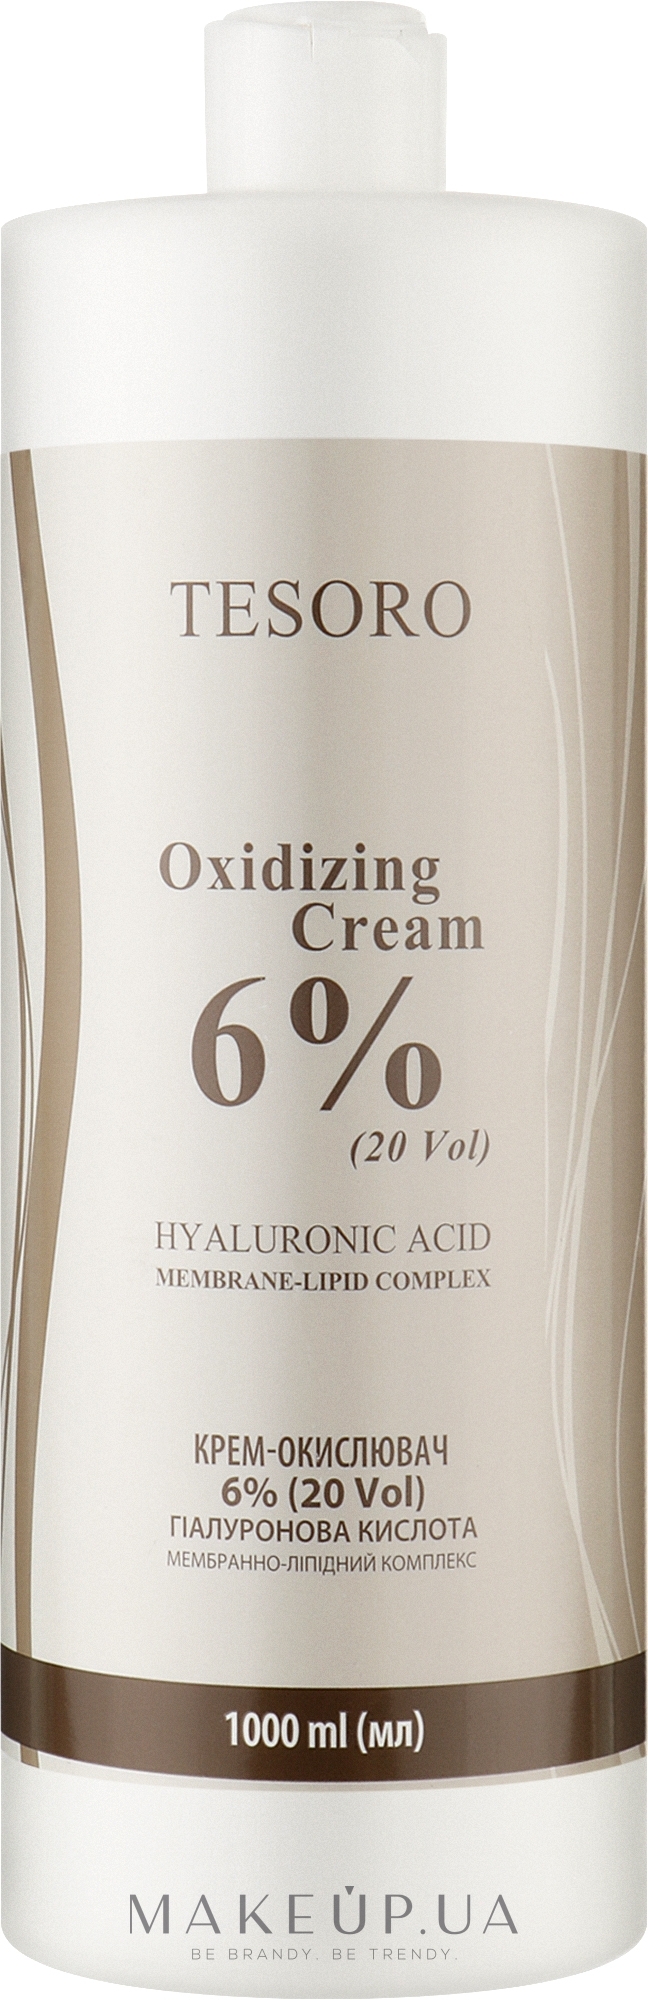 Крем-окислювач 6% - Moli Cosmetics Tesoro Oxidizing Cream 20 Vol — фото 1000ml